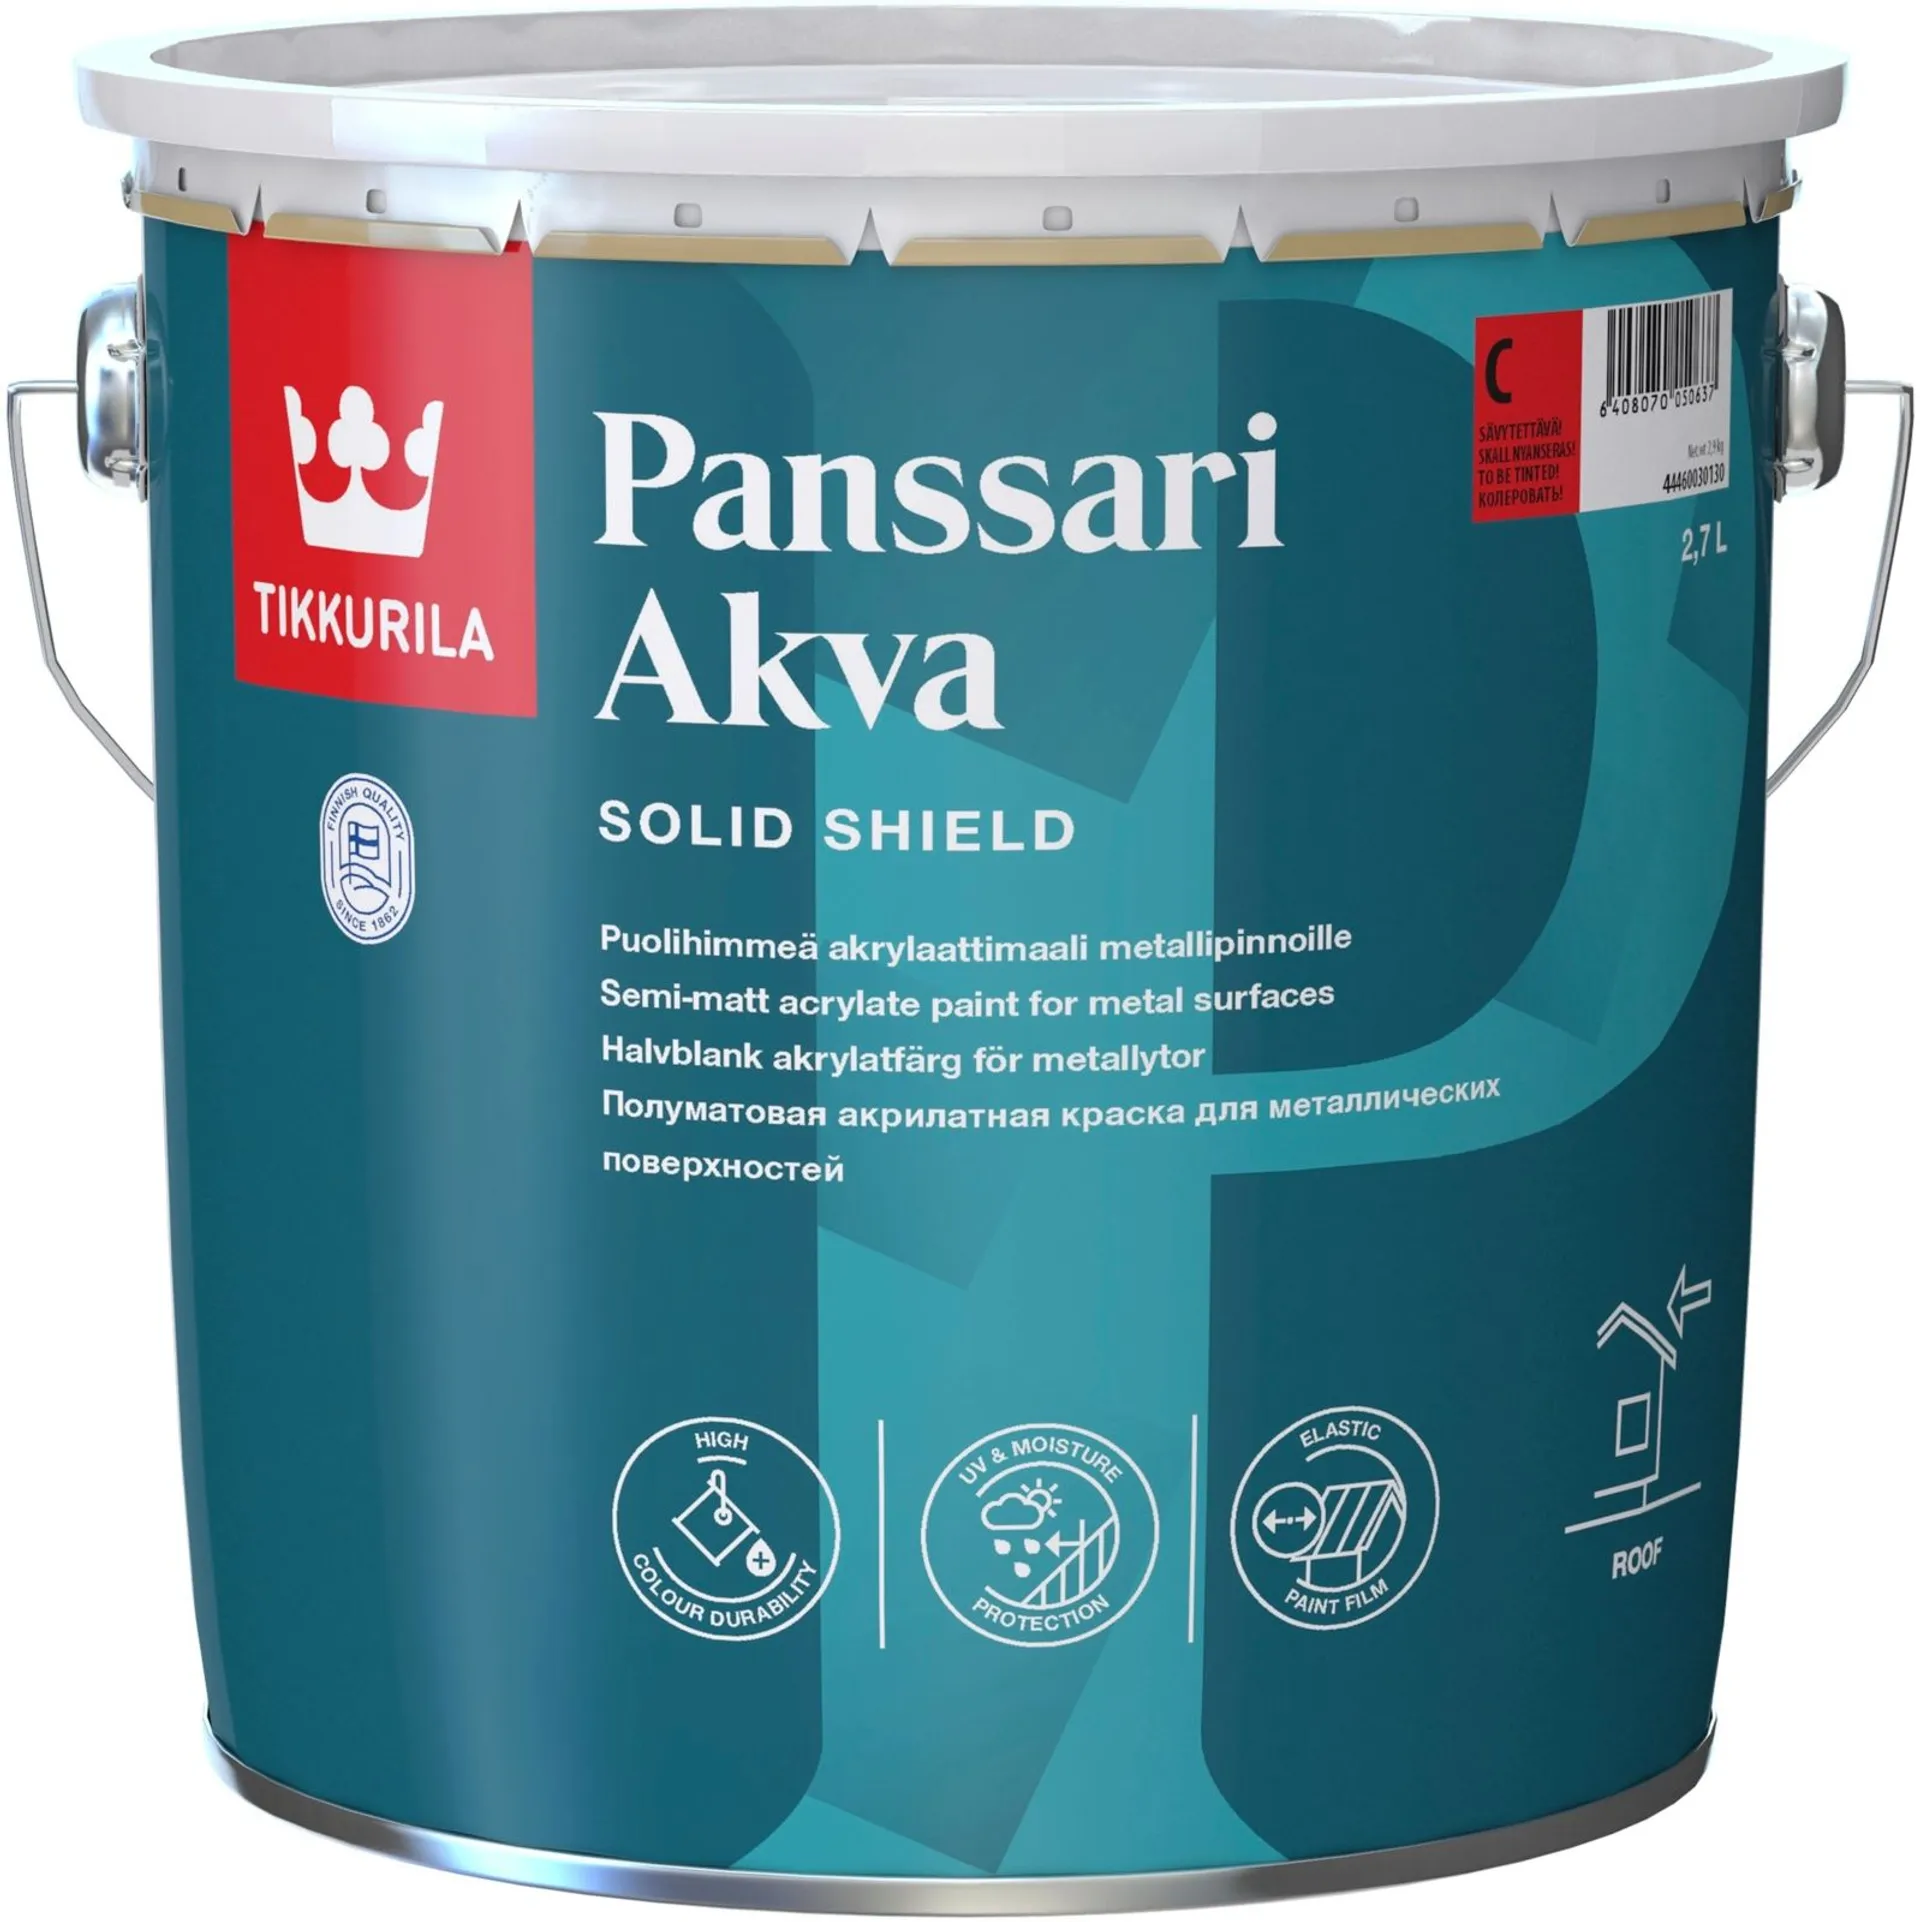 Tikkurila Panssari Akva akrylaattimaali metallipinnoille 2,7l A valkoinen sävytettävissä puolihimmeä